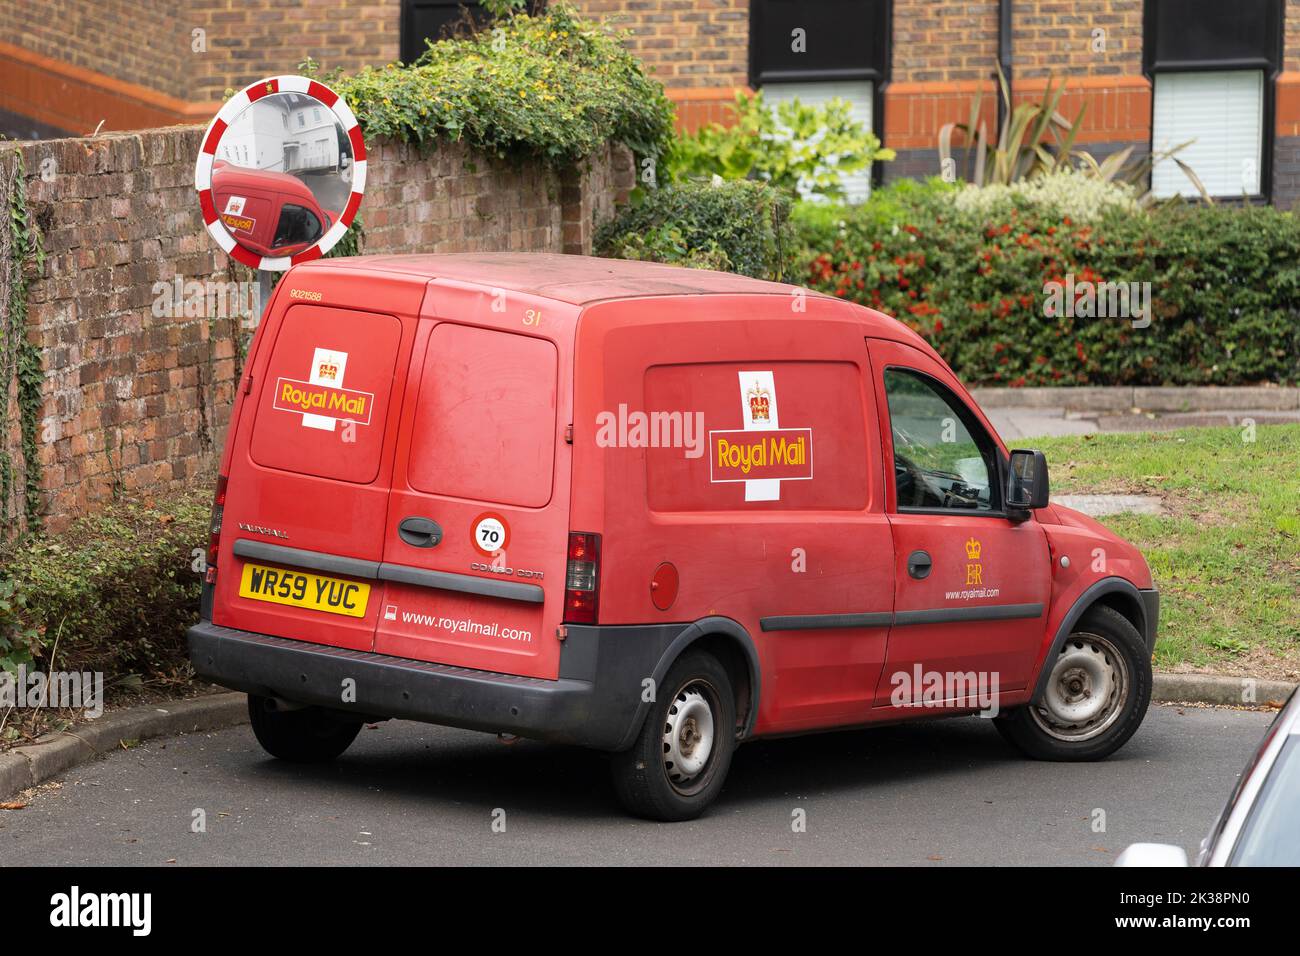 Royal Mail Group, camion de livraison rouge avec logo traditionnel. Angleterre, Royaume-Uni. Concept - marque Royal Mail, service postal, collecte de courrier, livraison de colis Banque D'Images